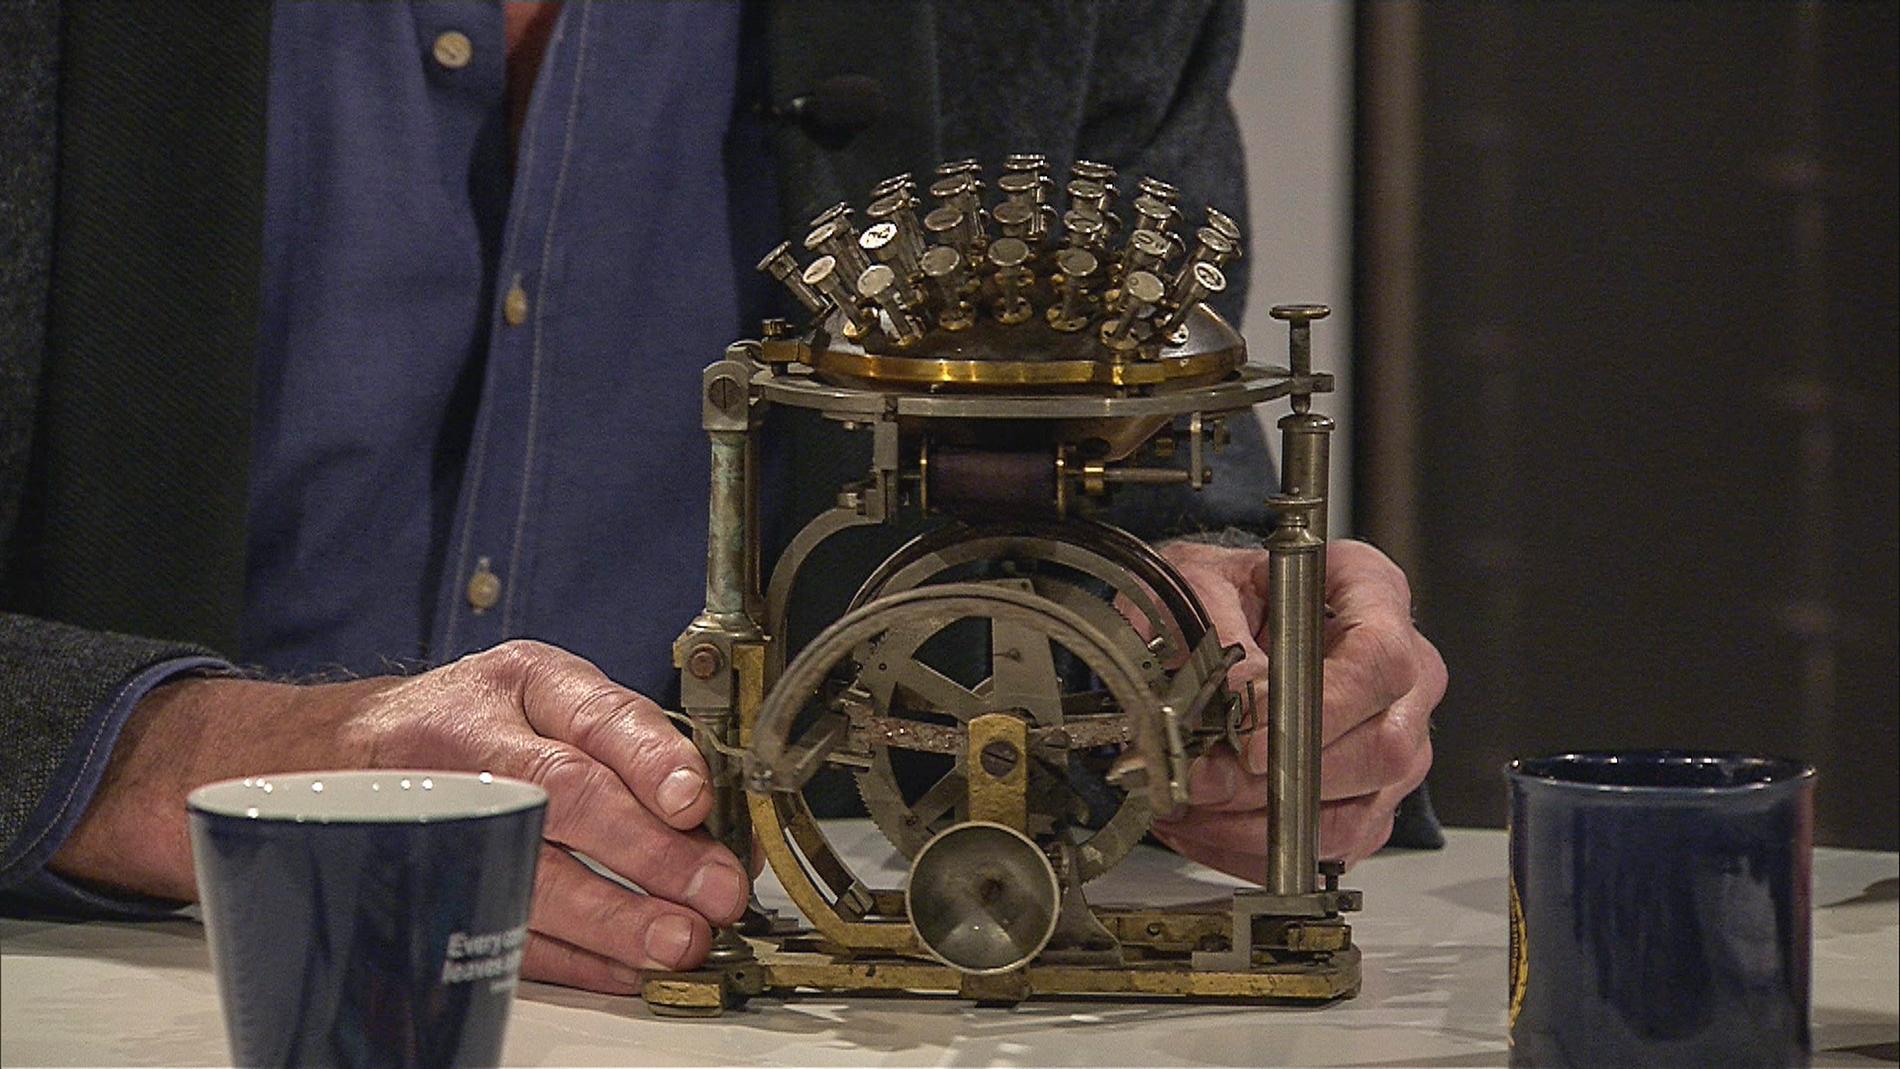 Rasmus Malling-Hansens skrivkula är världens första serietillverkade skrivmaskin. Exemplaret i "Veckans brott"-studion värderas till en miljon kronor.